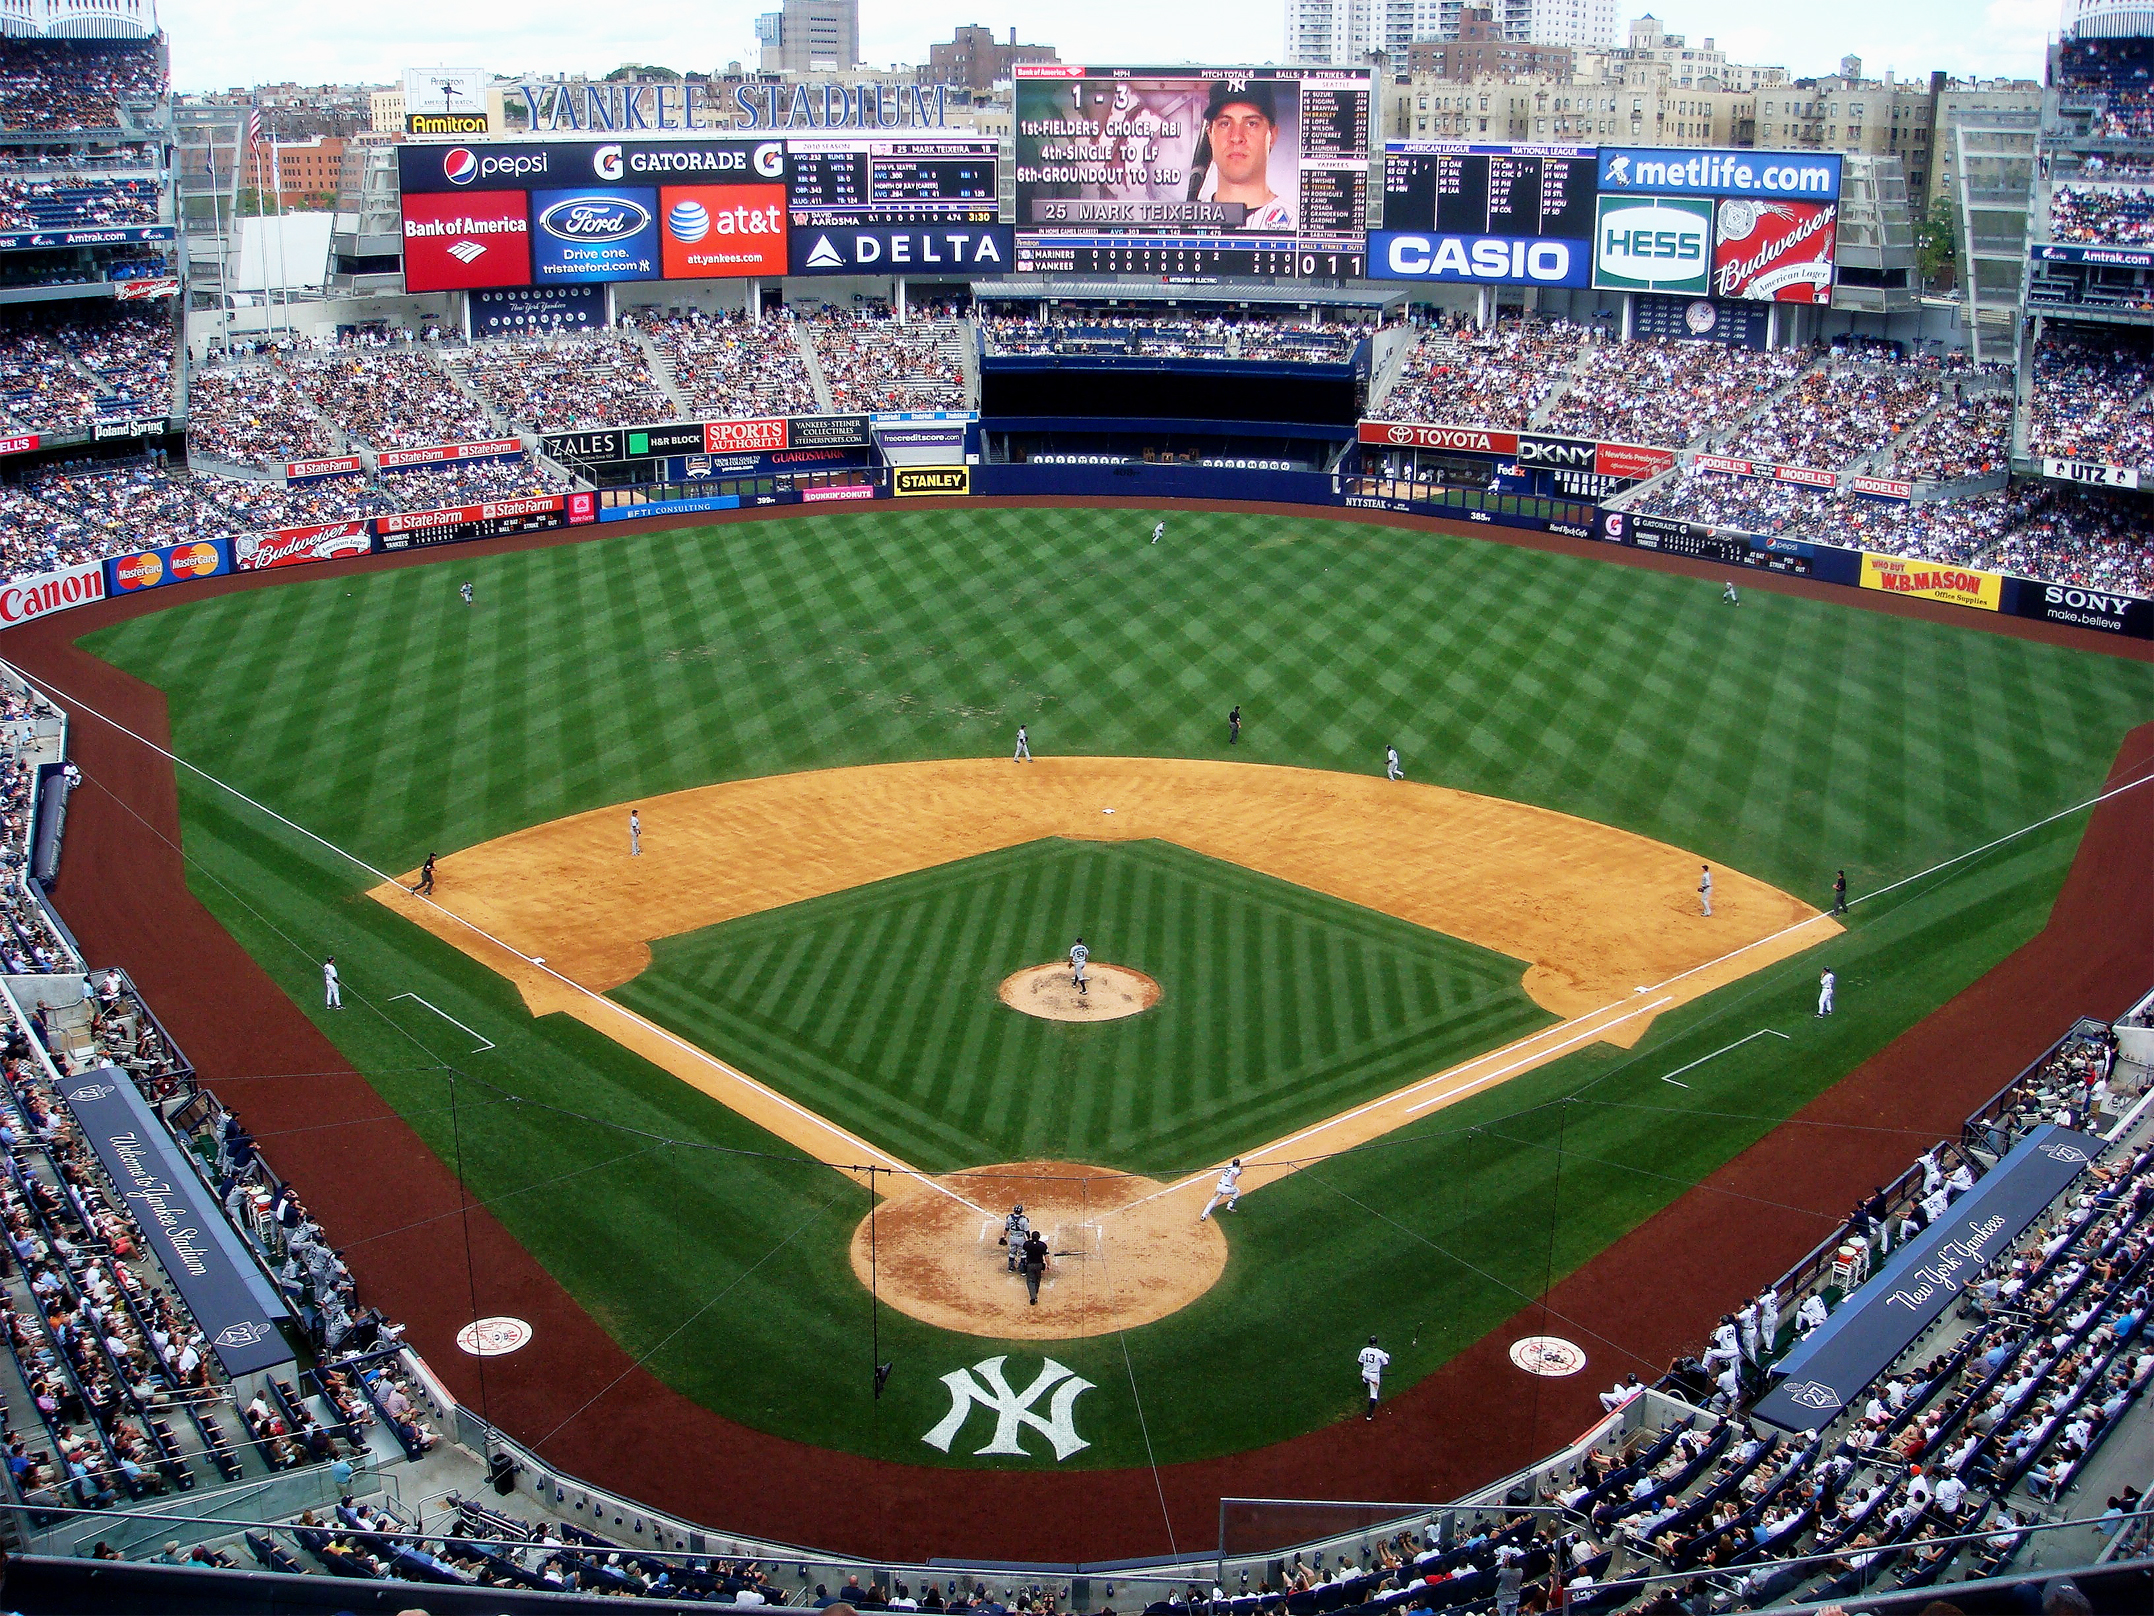 Yankee Stadium, home of the New York Yankees